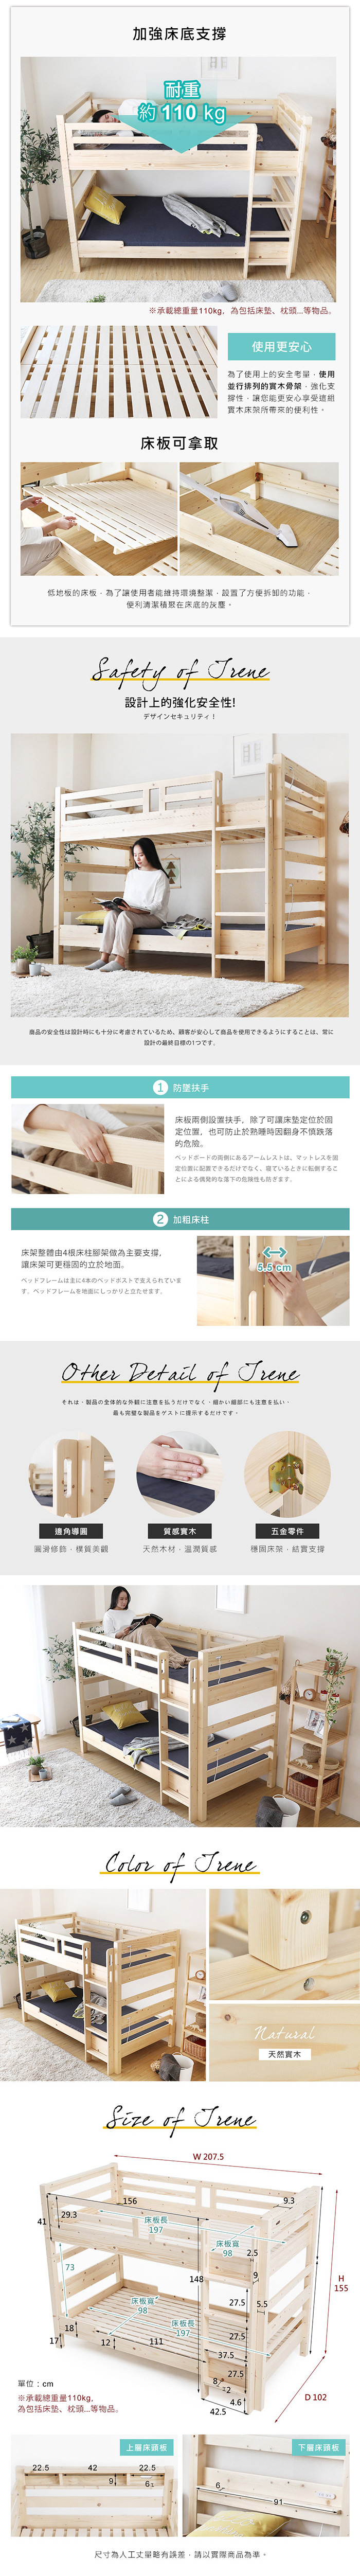 預購9月上旬雙層床 艾琳系列日式清新雙層床架(上下舖) / H&D東稻家居